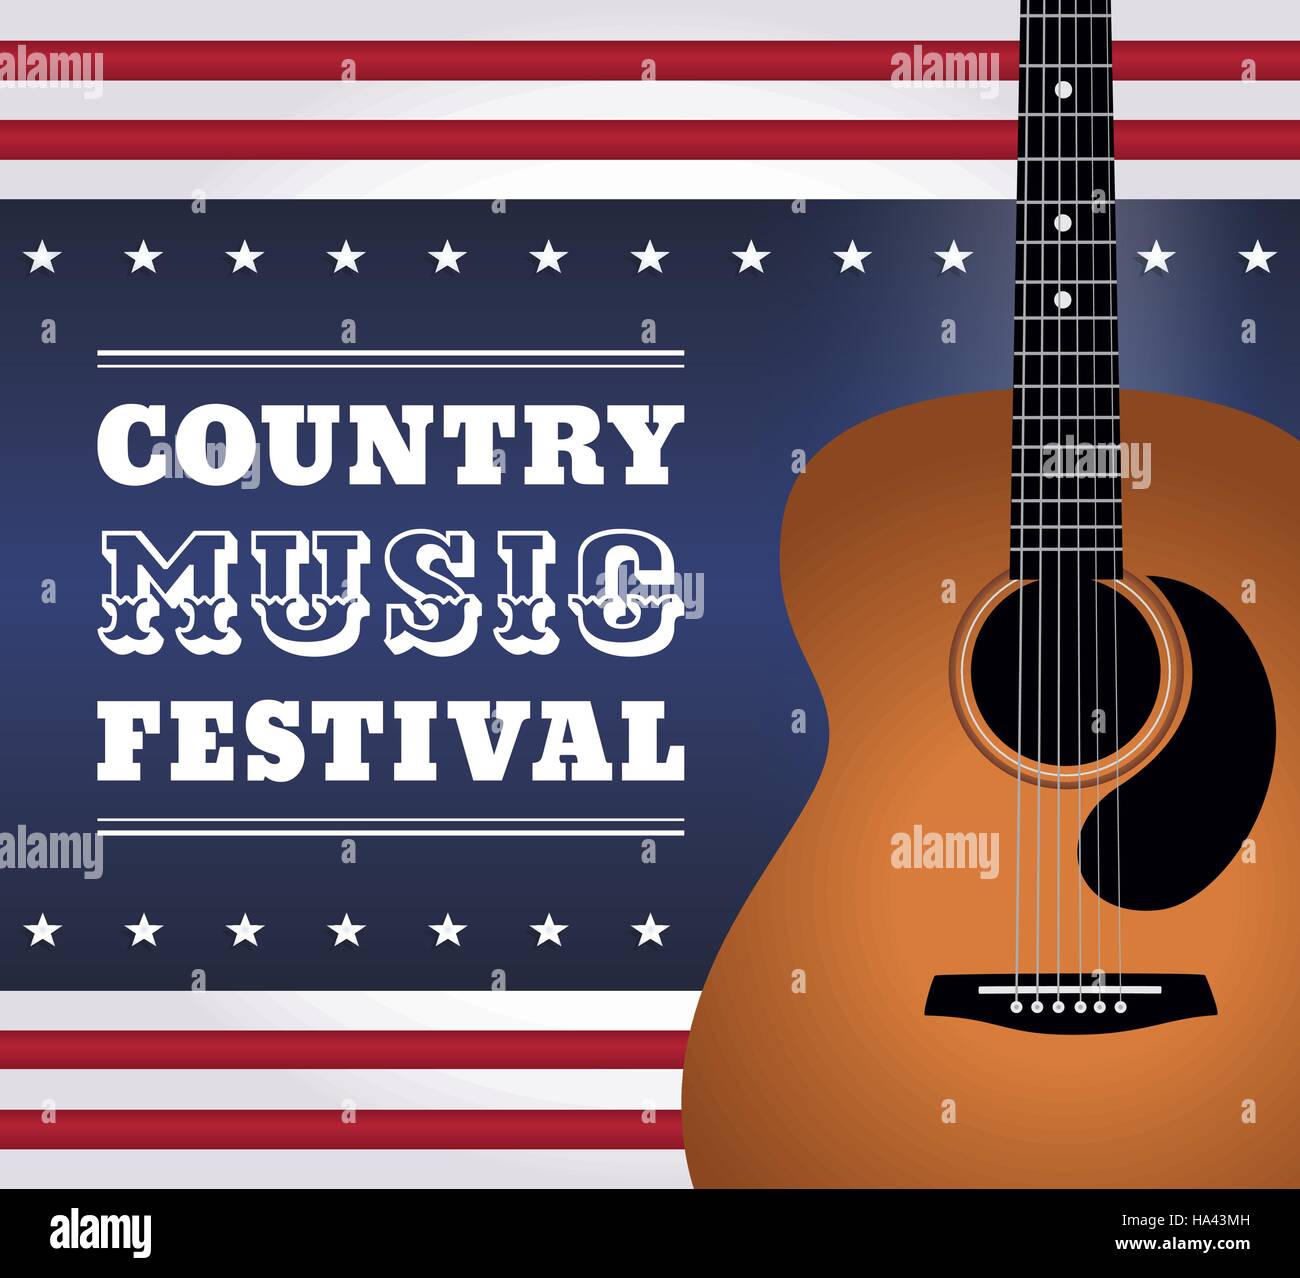 Illustration vectorielle de guitare acoustique sur fond abstrait, texte 'Country Music Festival'. La guitare entière est à l'intérieur du masque de coupure. Illustration de Vecteur